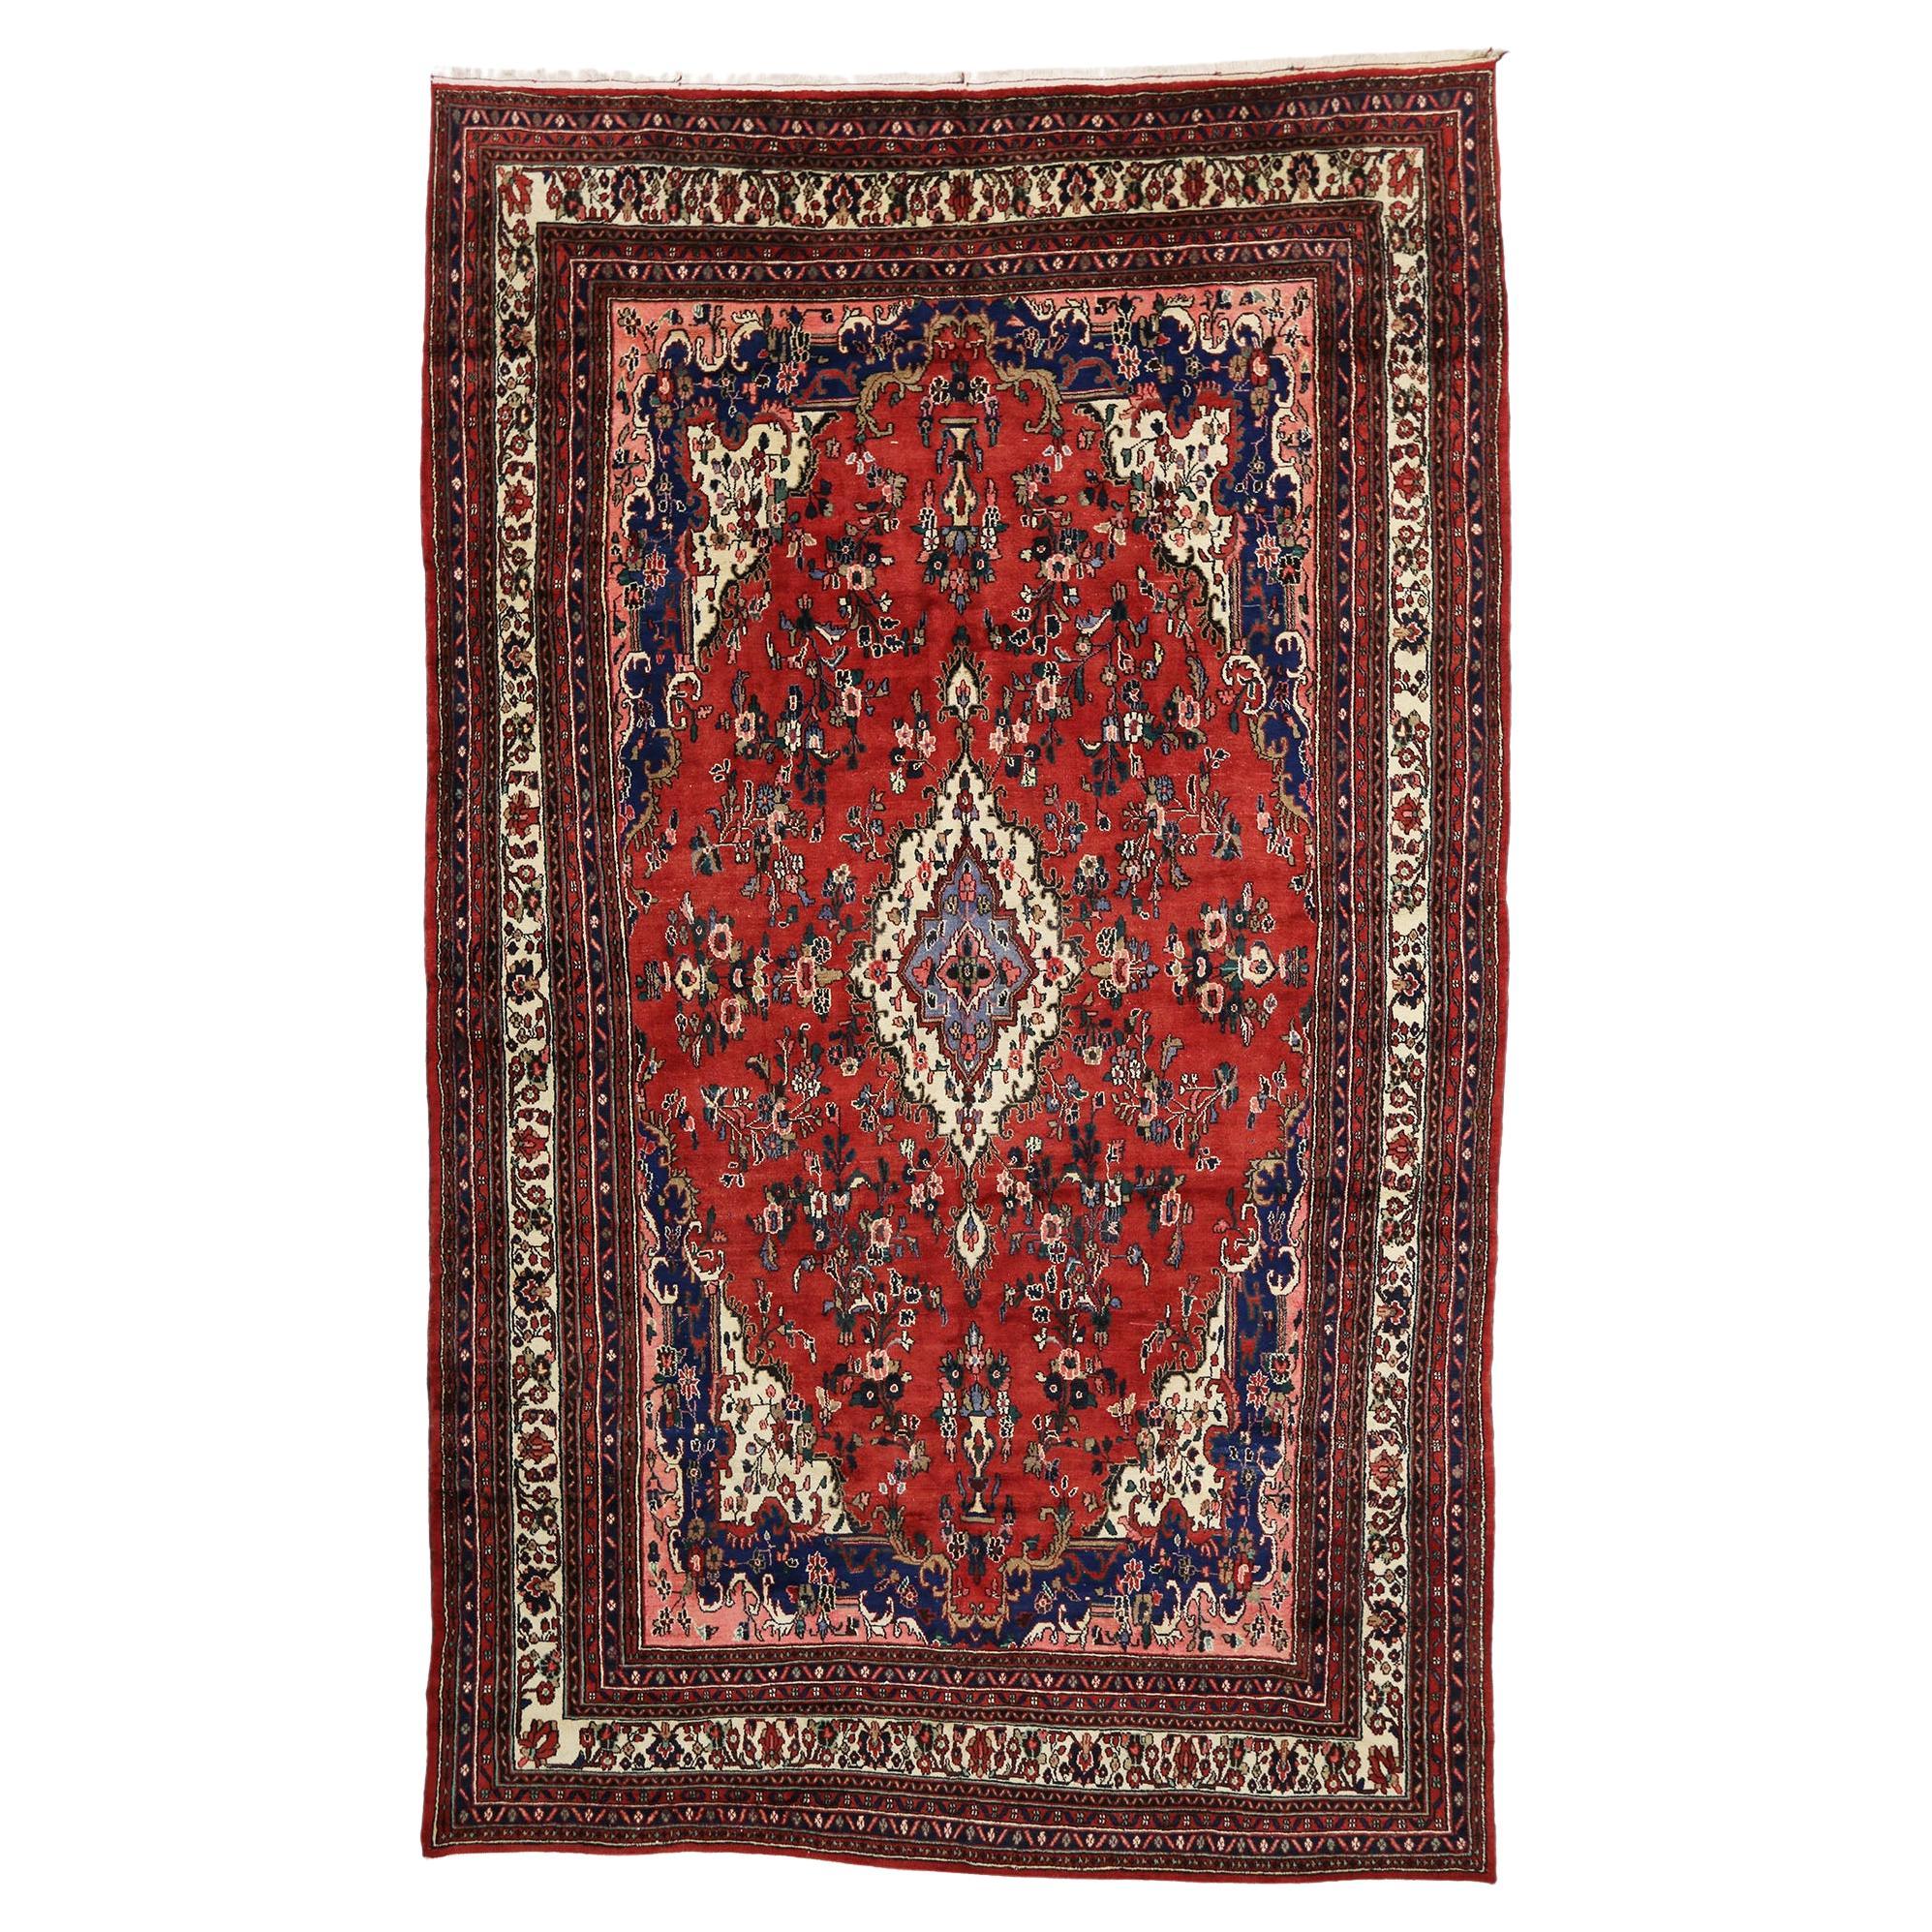 Grand tapis persan Hamadan d'époque, l'Elegance Timeless rencontre le charme victorien 